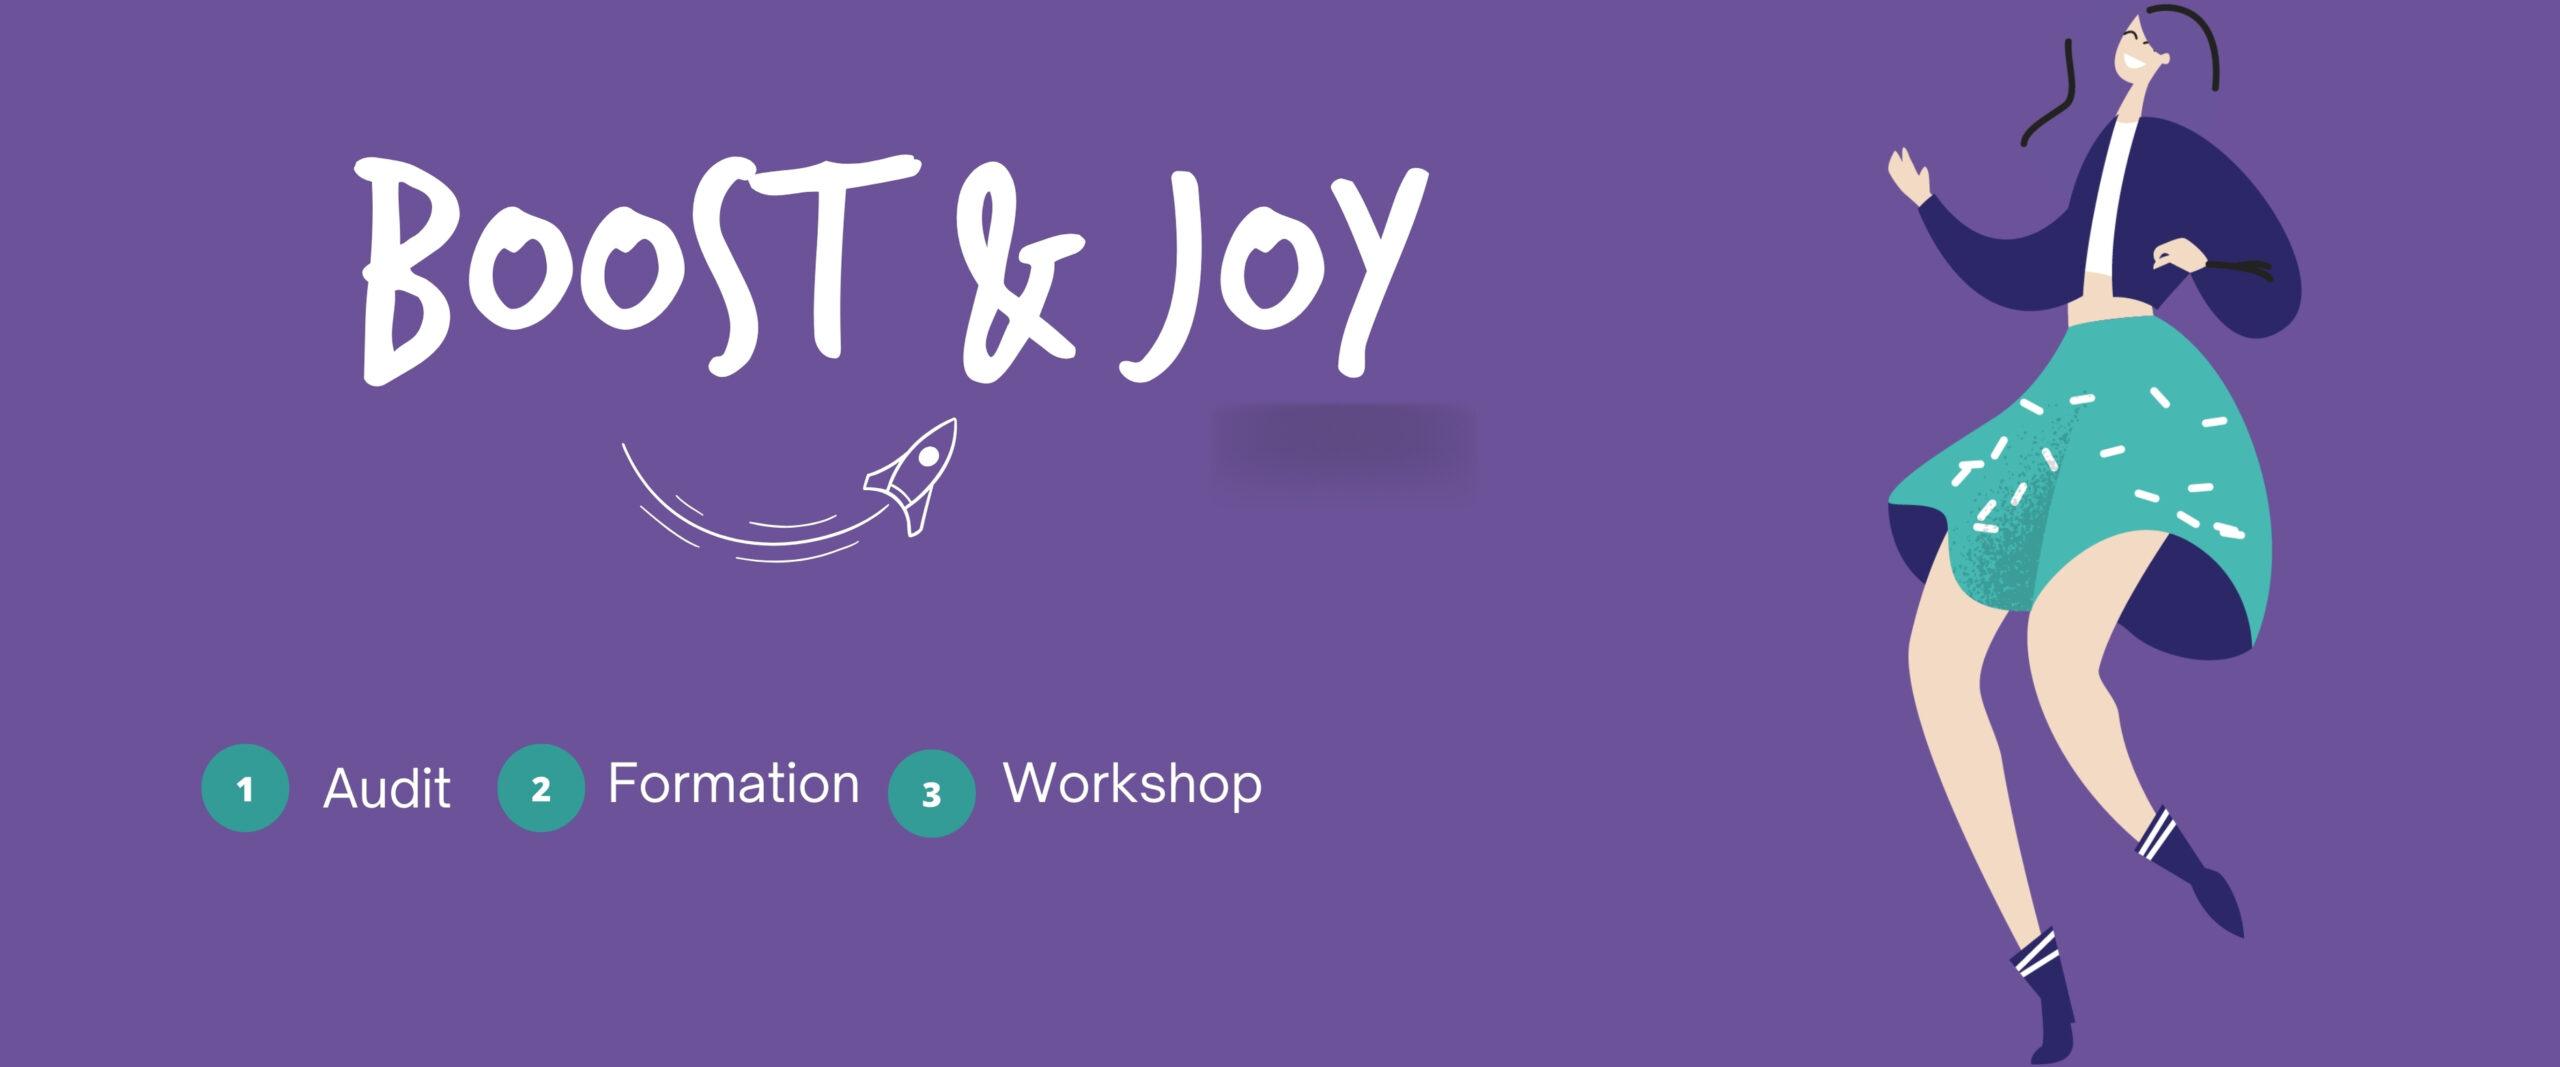 BOOST & JOY : notre programme en 3 étapes pour booster votre attractivité et votre performance